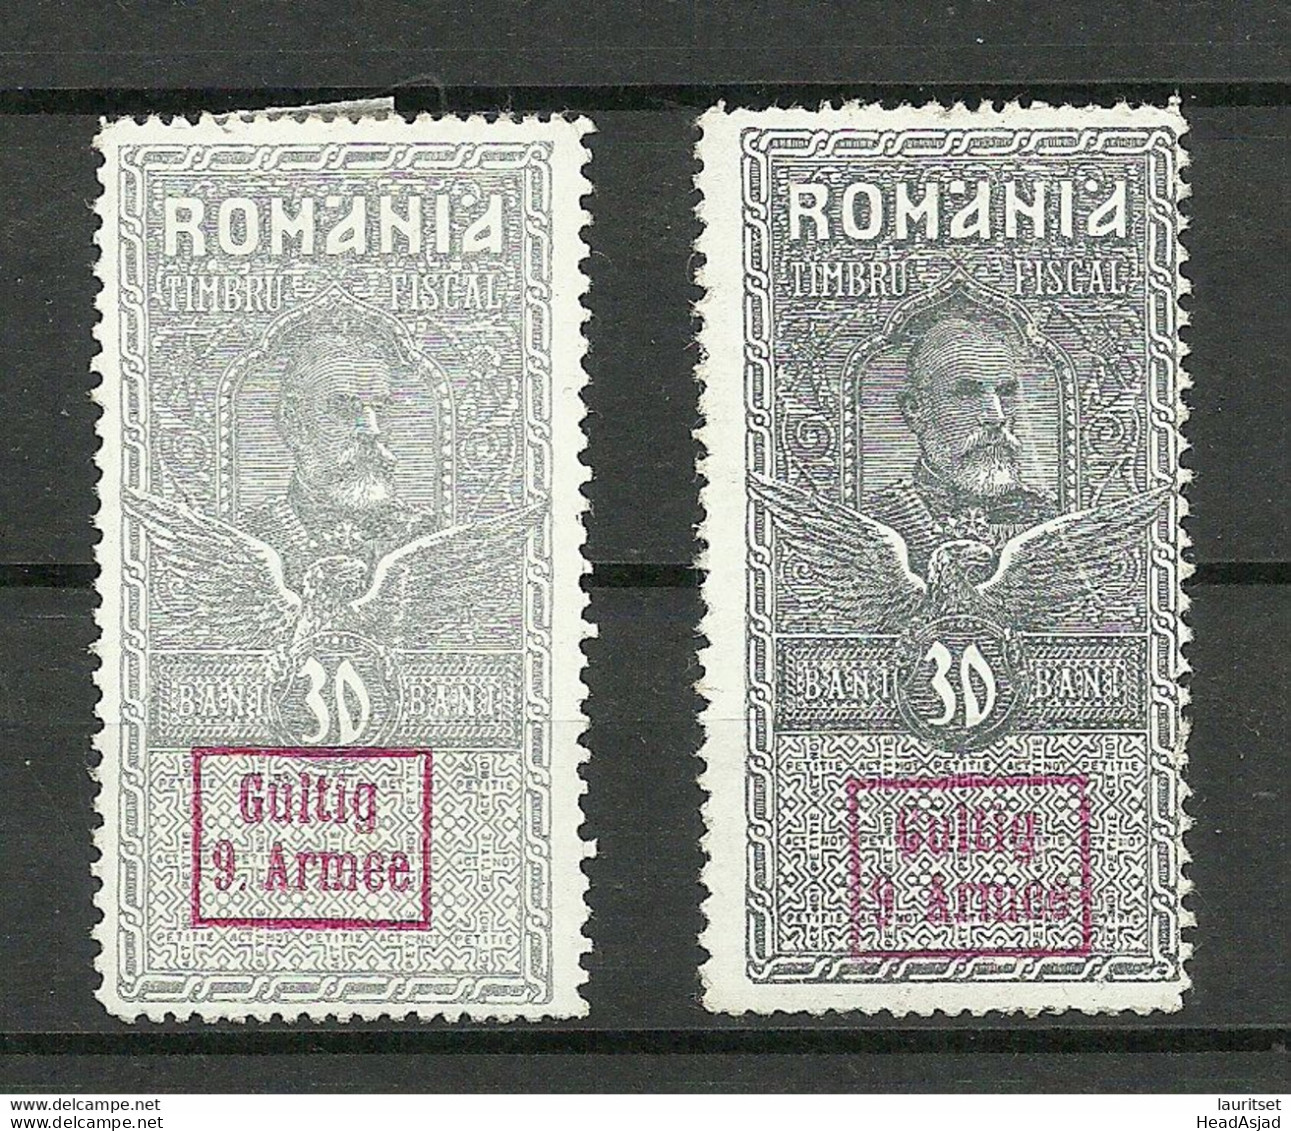 Germany Deutsche Militärverwaltung Romania Rumänien 1917 * Stempelmarke Fischal Tax OPT Gültig 9. Armee - Color Shades - Bezetting 1914-18